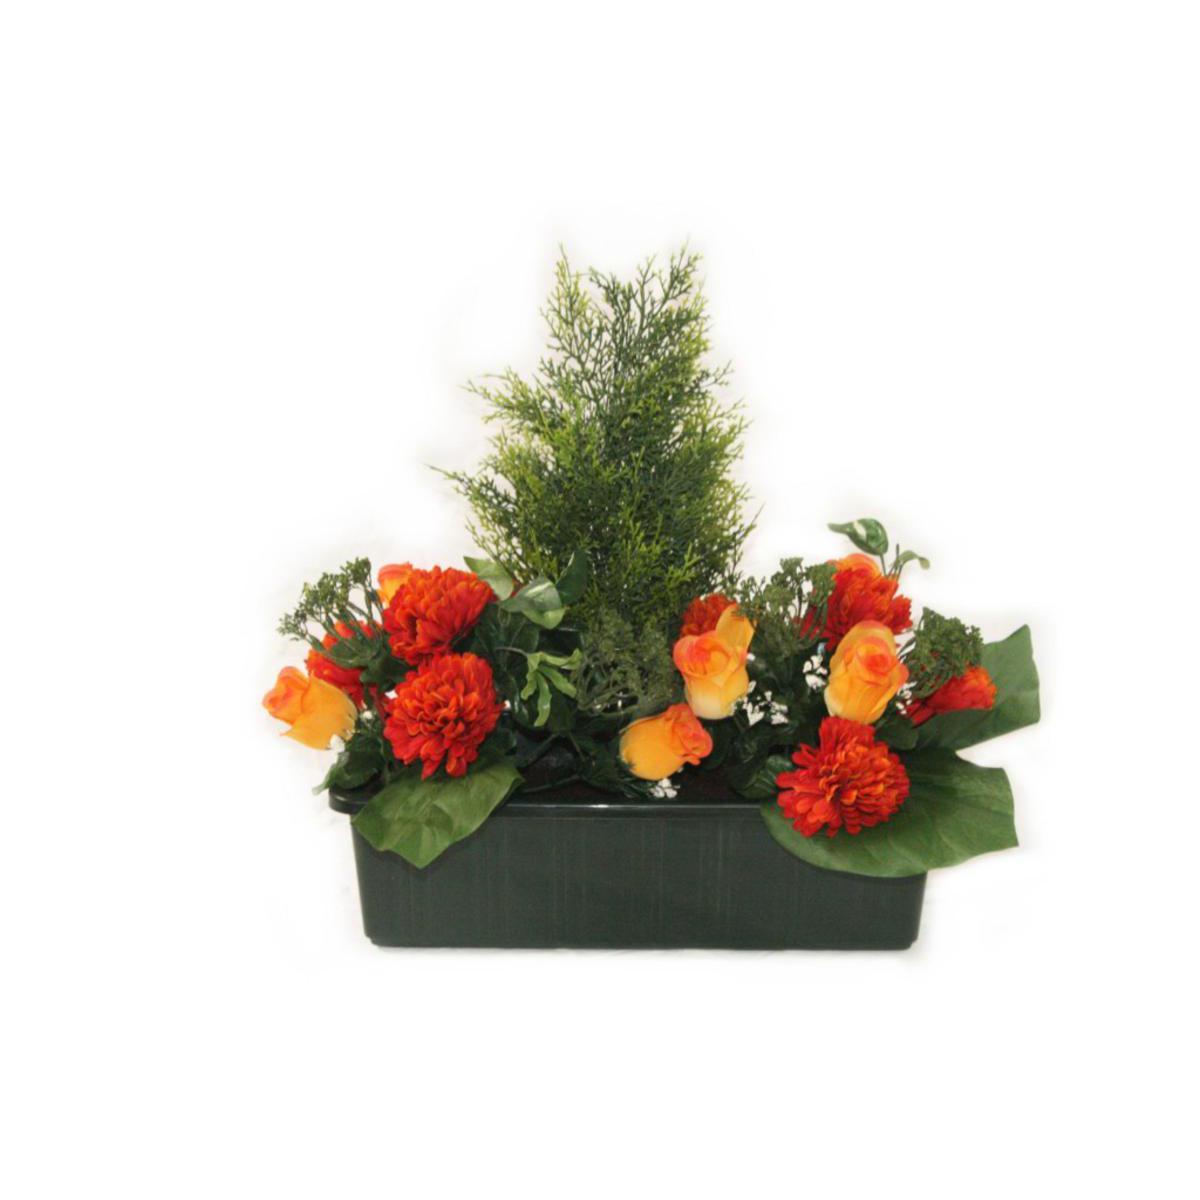 Jardinière de roses, chrysanthèmes et cyprès - Polyester - H 40 cm - Orange et rouge